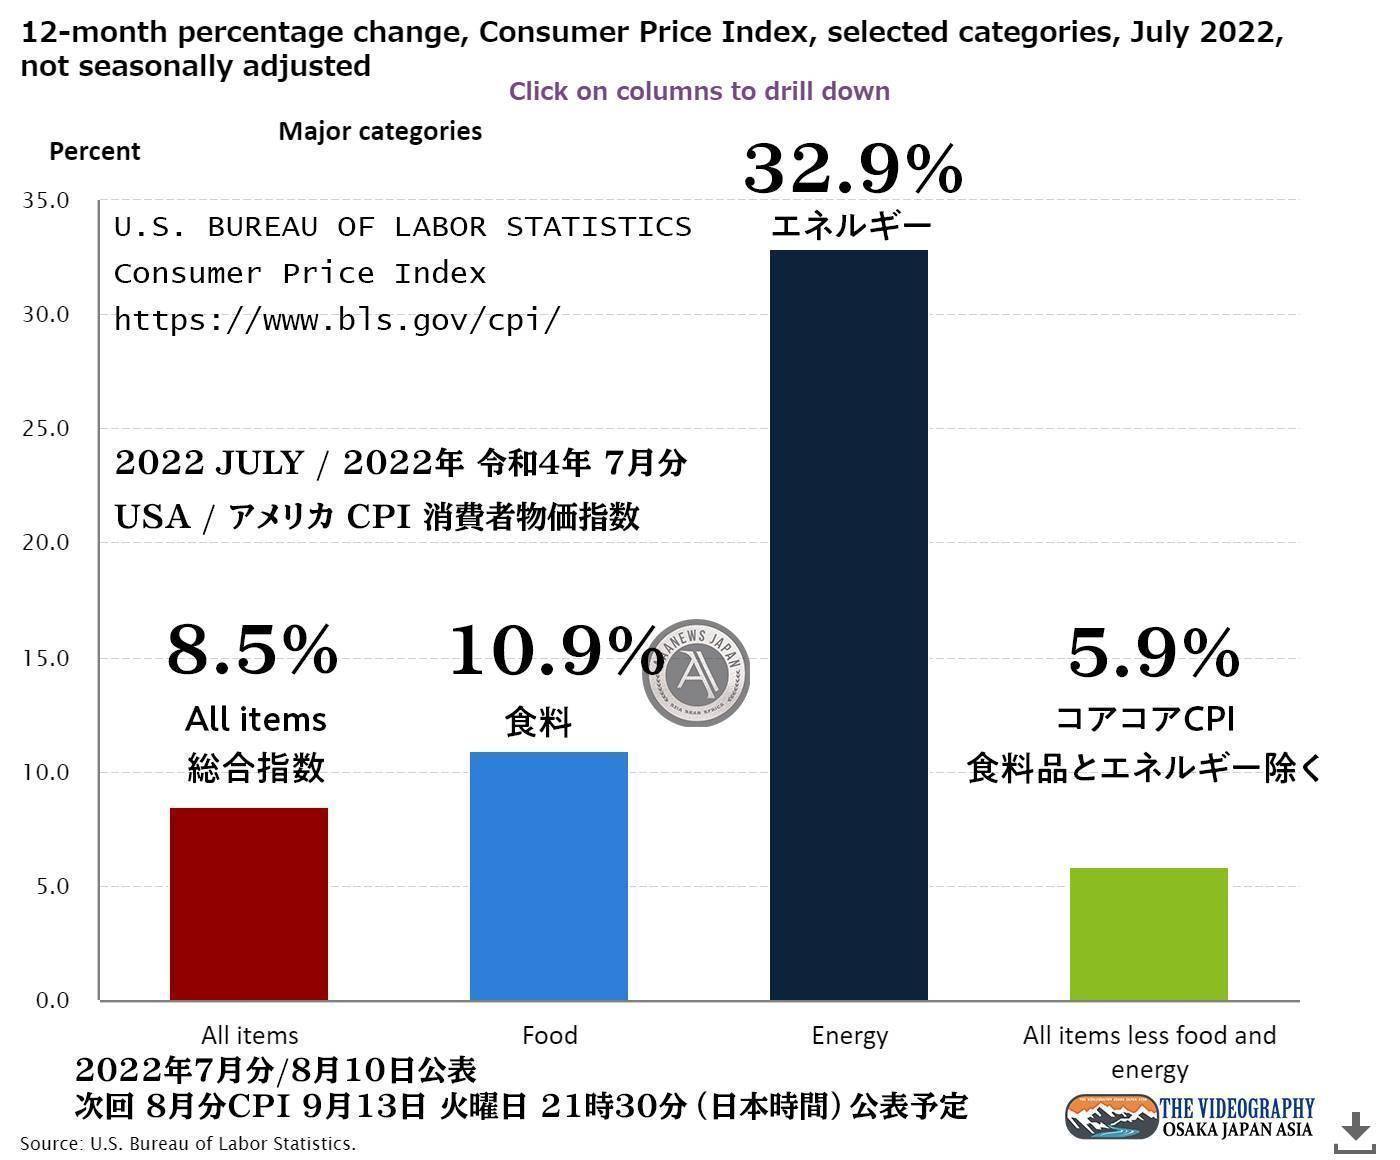 アメリカ 消費者物価指数 CPI CONSUMER PRICE INDEX - JULY 2022 総合指数 8.5%、コアコアCPI（食料品とエネルギーを除く・less food and energy index） 5.9%